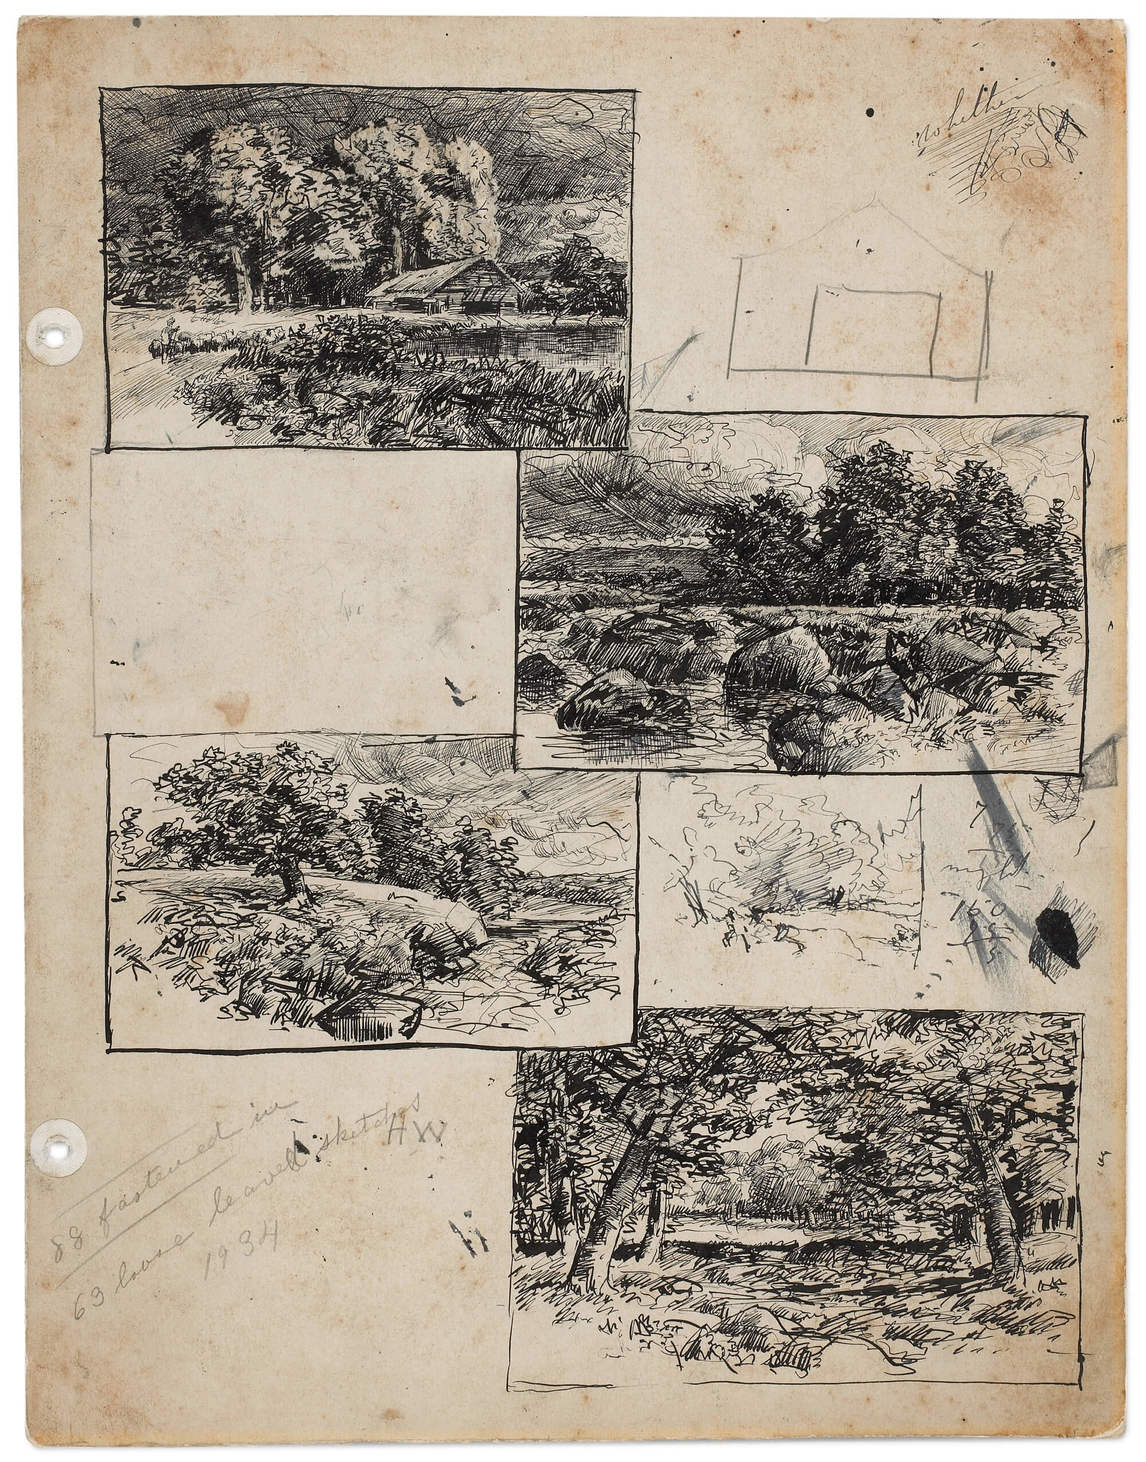 Homer Watson, dessins de paysage et esquisse préliminaire d’un bâtiment, v.1895-1896 